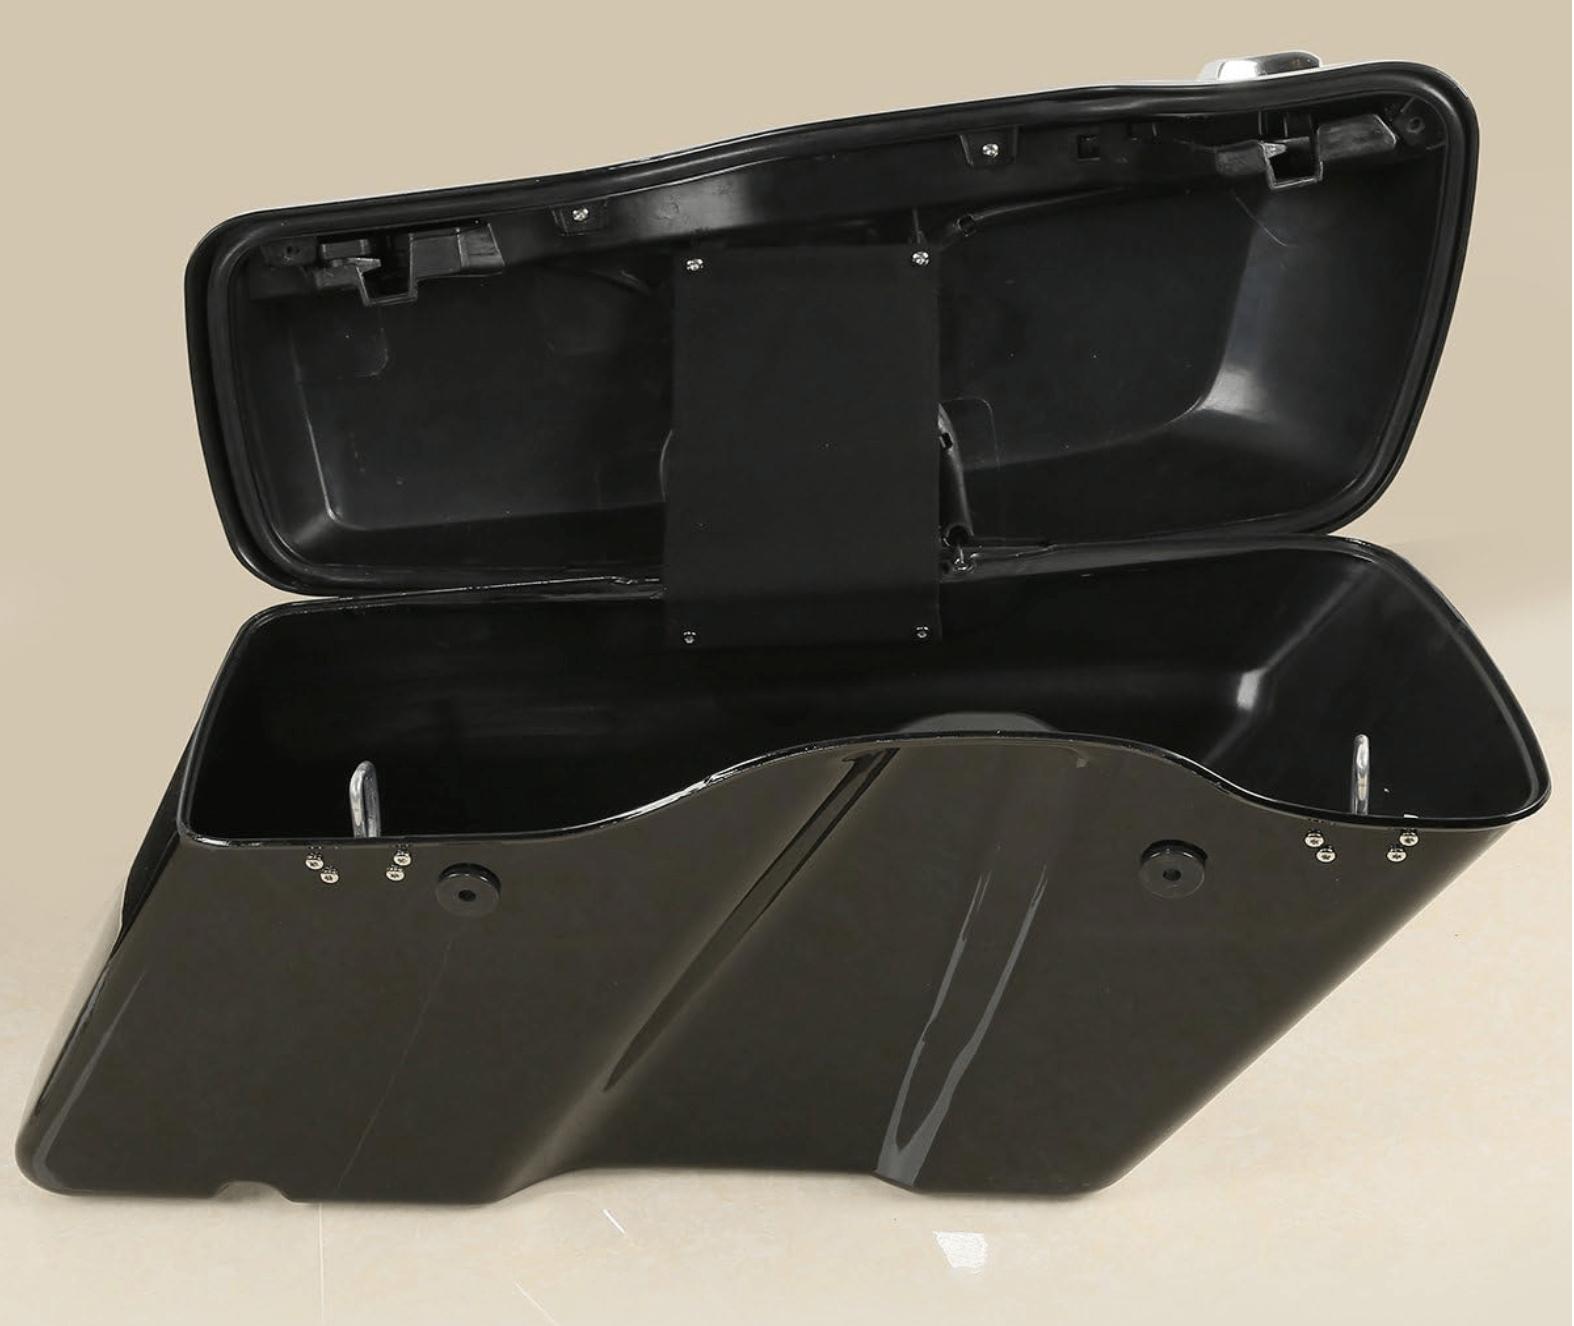 Honda VTX 1300 Shorty Bagger Kit - Backyard Air Suspension & Innovations, LLC.